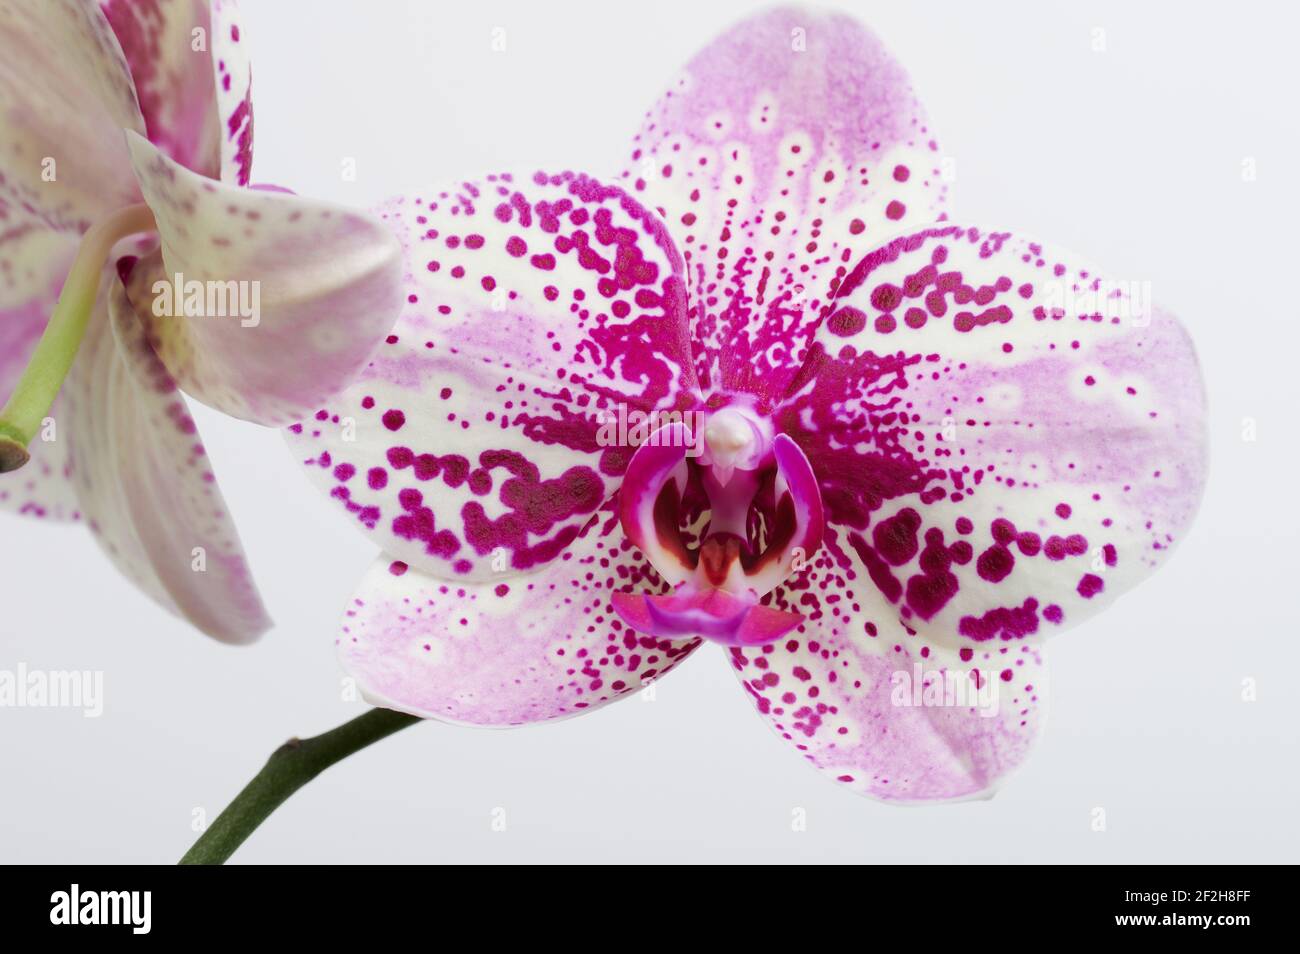 Vue avant de la tête de fleur d'orchidée violette isolée sur fond de studio Banque D'Images